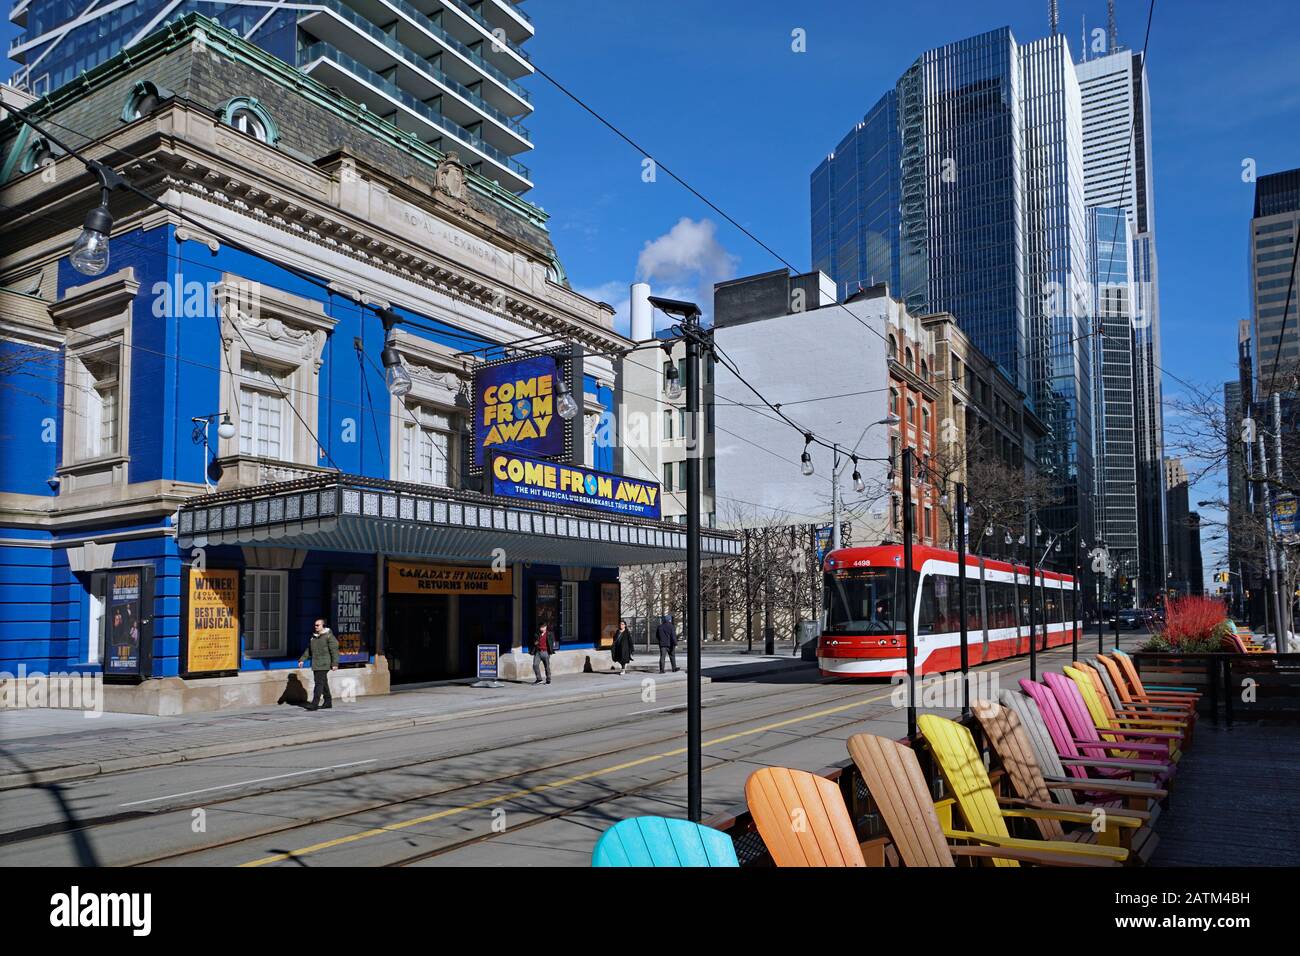 Toronto - FEBRUAR 2020: Das historische Royal Alexandra Theatre ist in der King Street im Stadtzentrum von Toronto zu sehen, umgeben von modernen Wolkenkratzern. Stockfoto